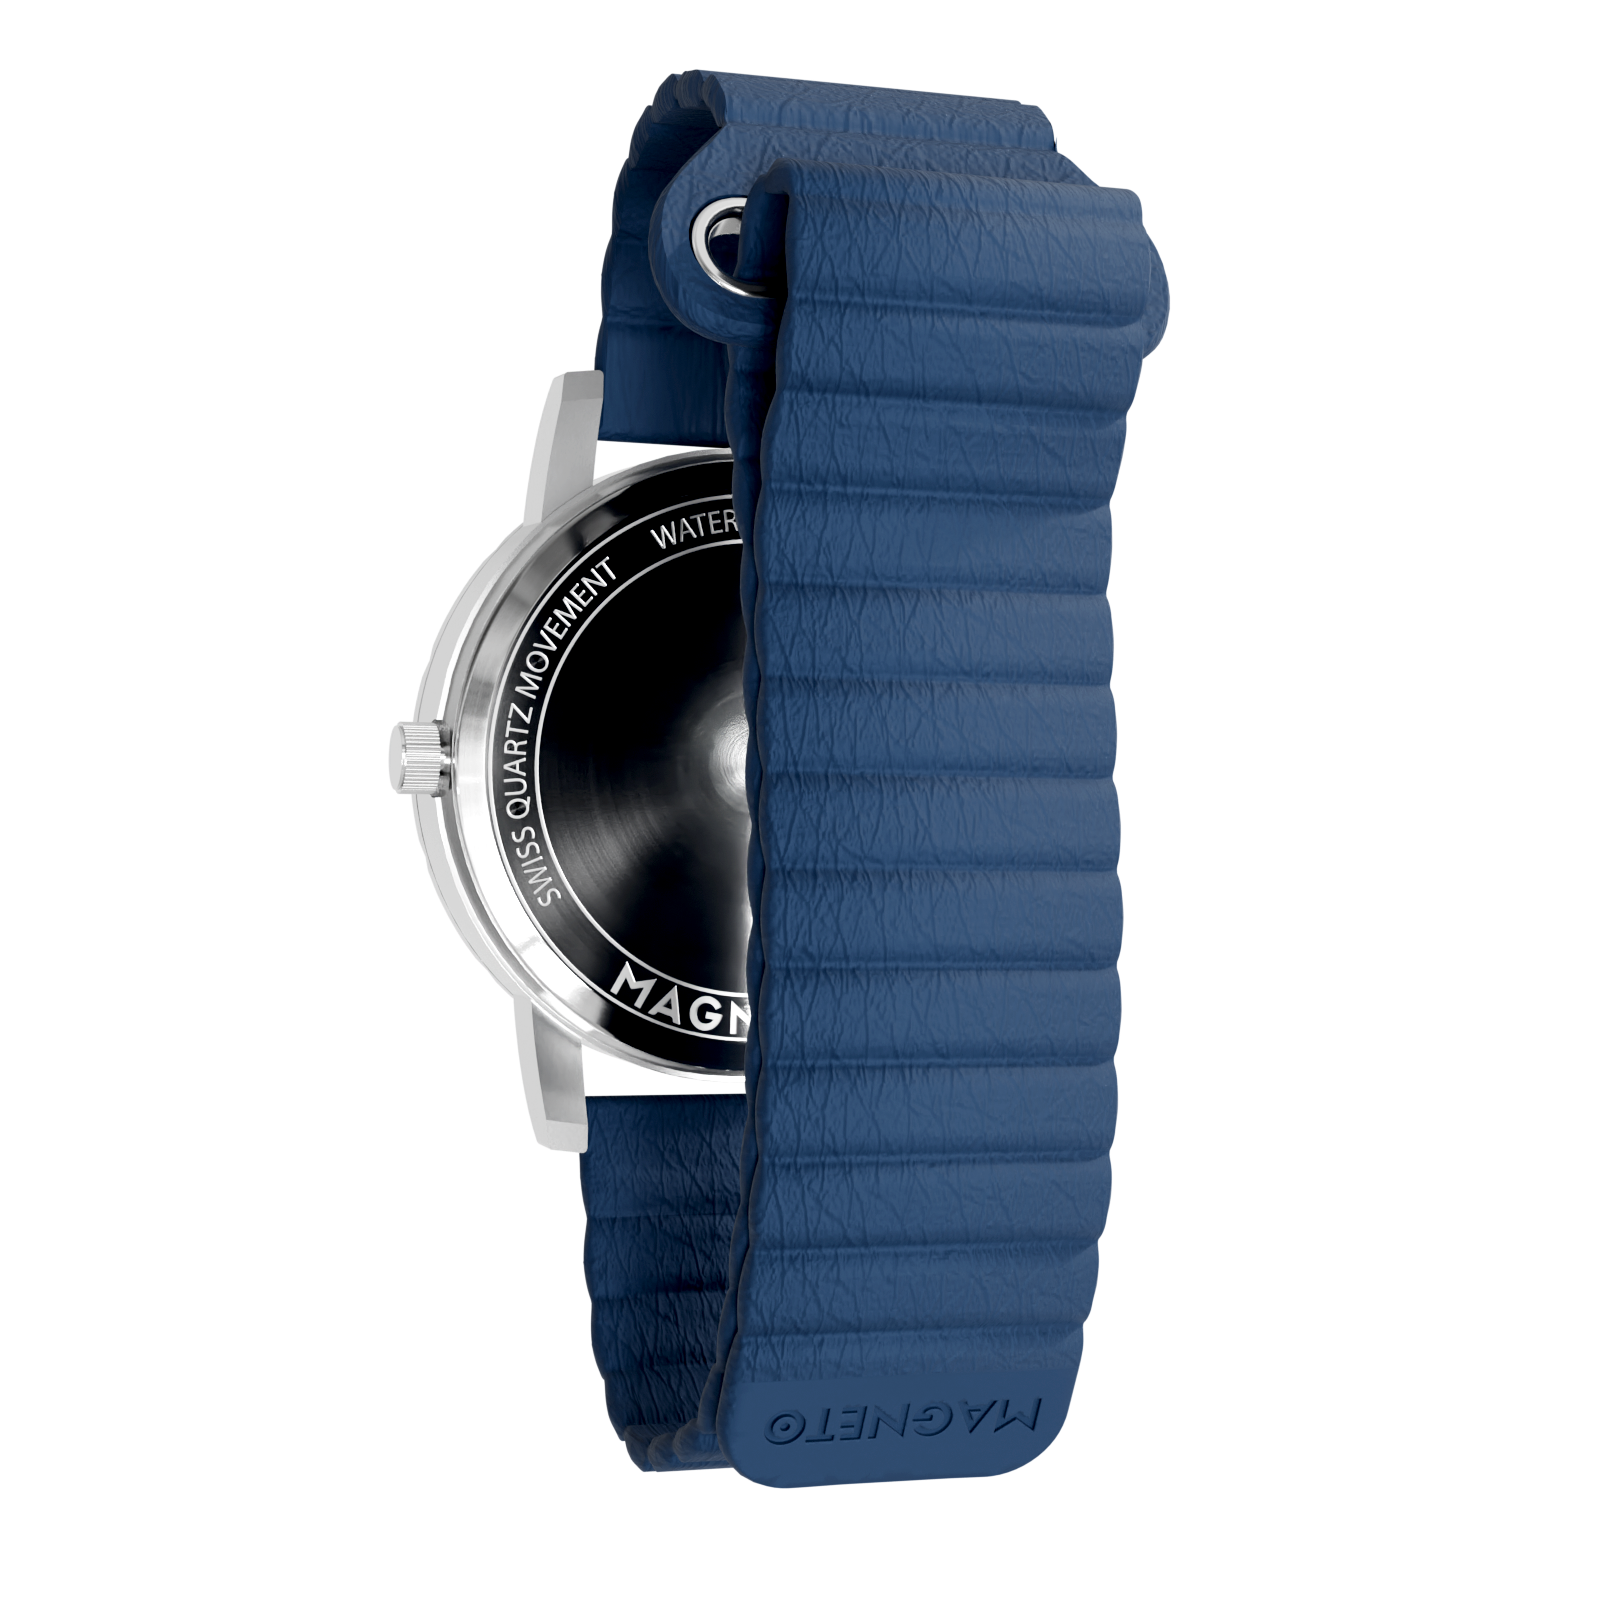 Magneto-Watch-Komet-Silver-Kunstleder-Magnetisch-Blau-Back